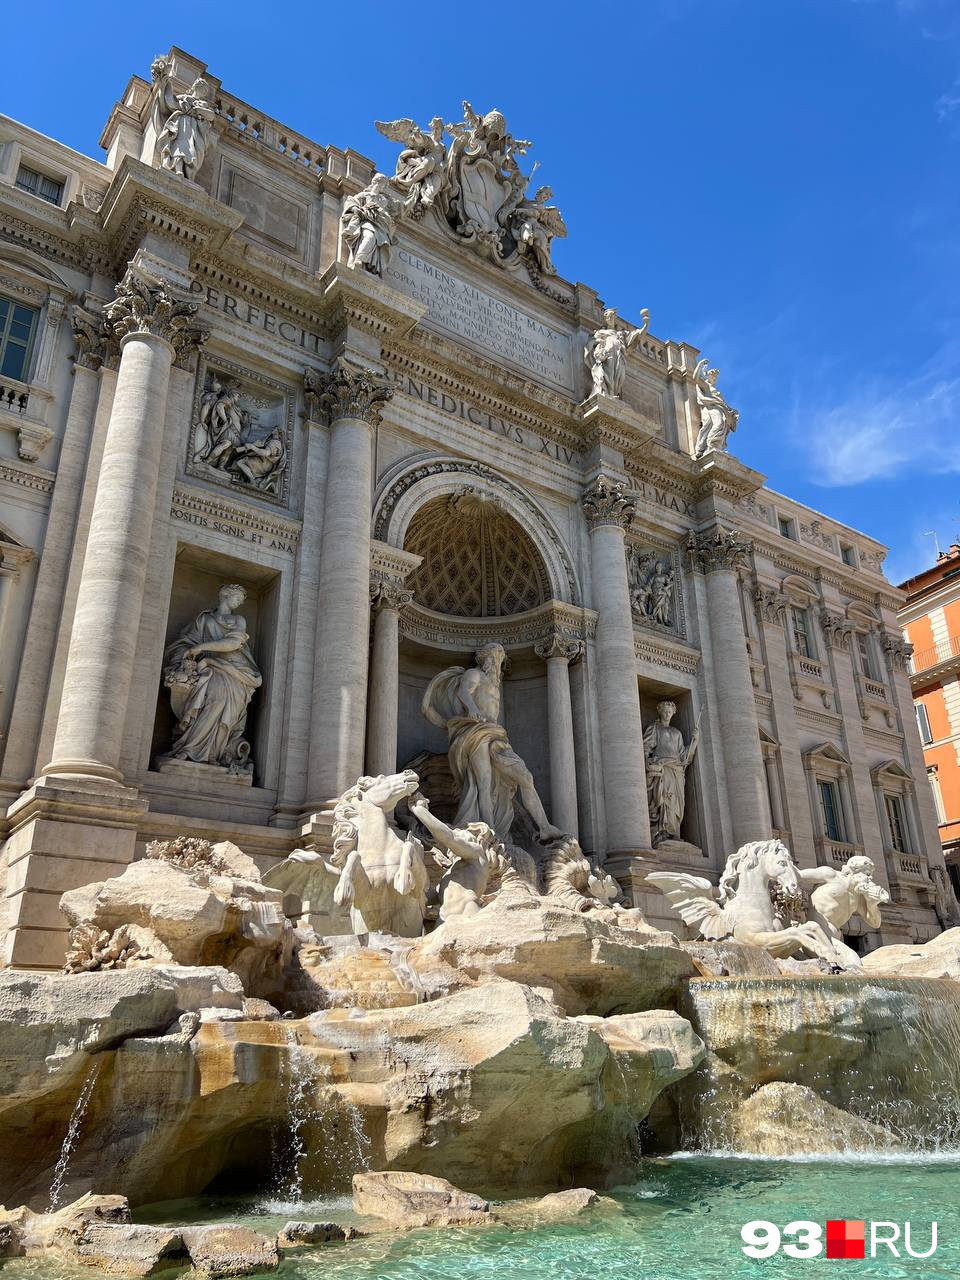 А это фонтан Треви, самый крупный в Риме и один из самых известных в Италии 